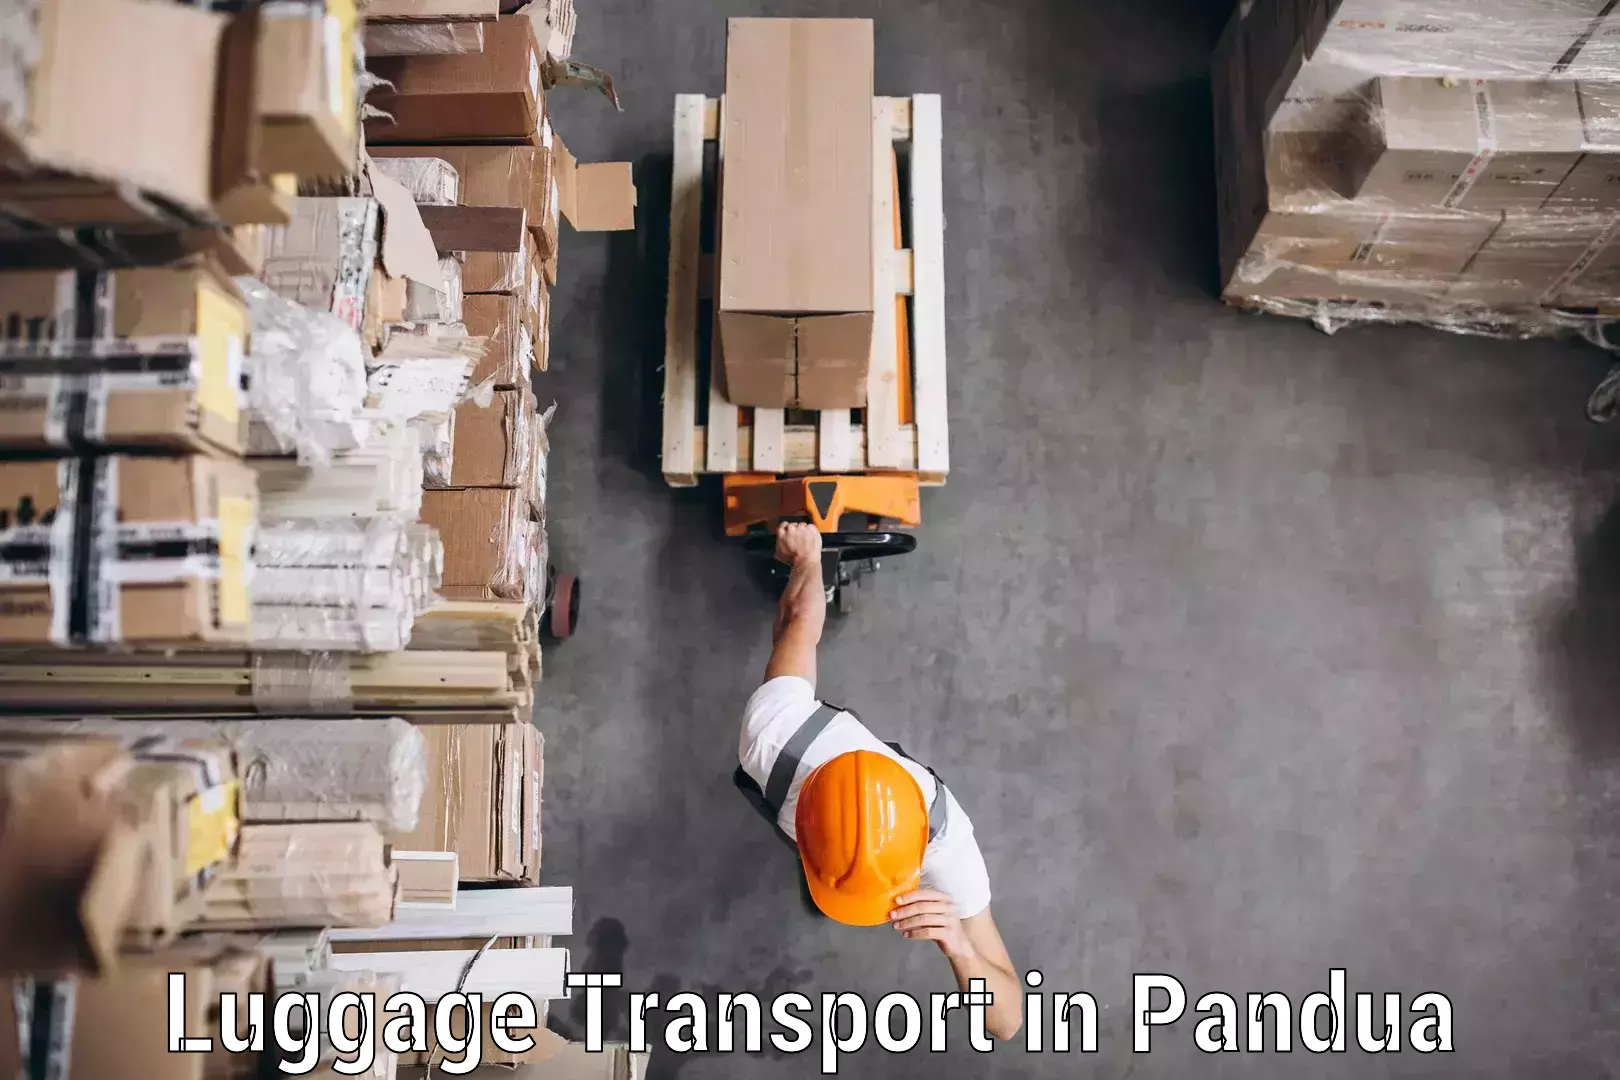 Corporate baggage transport in Pandua